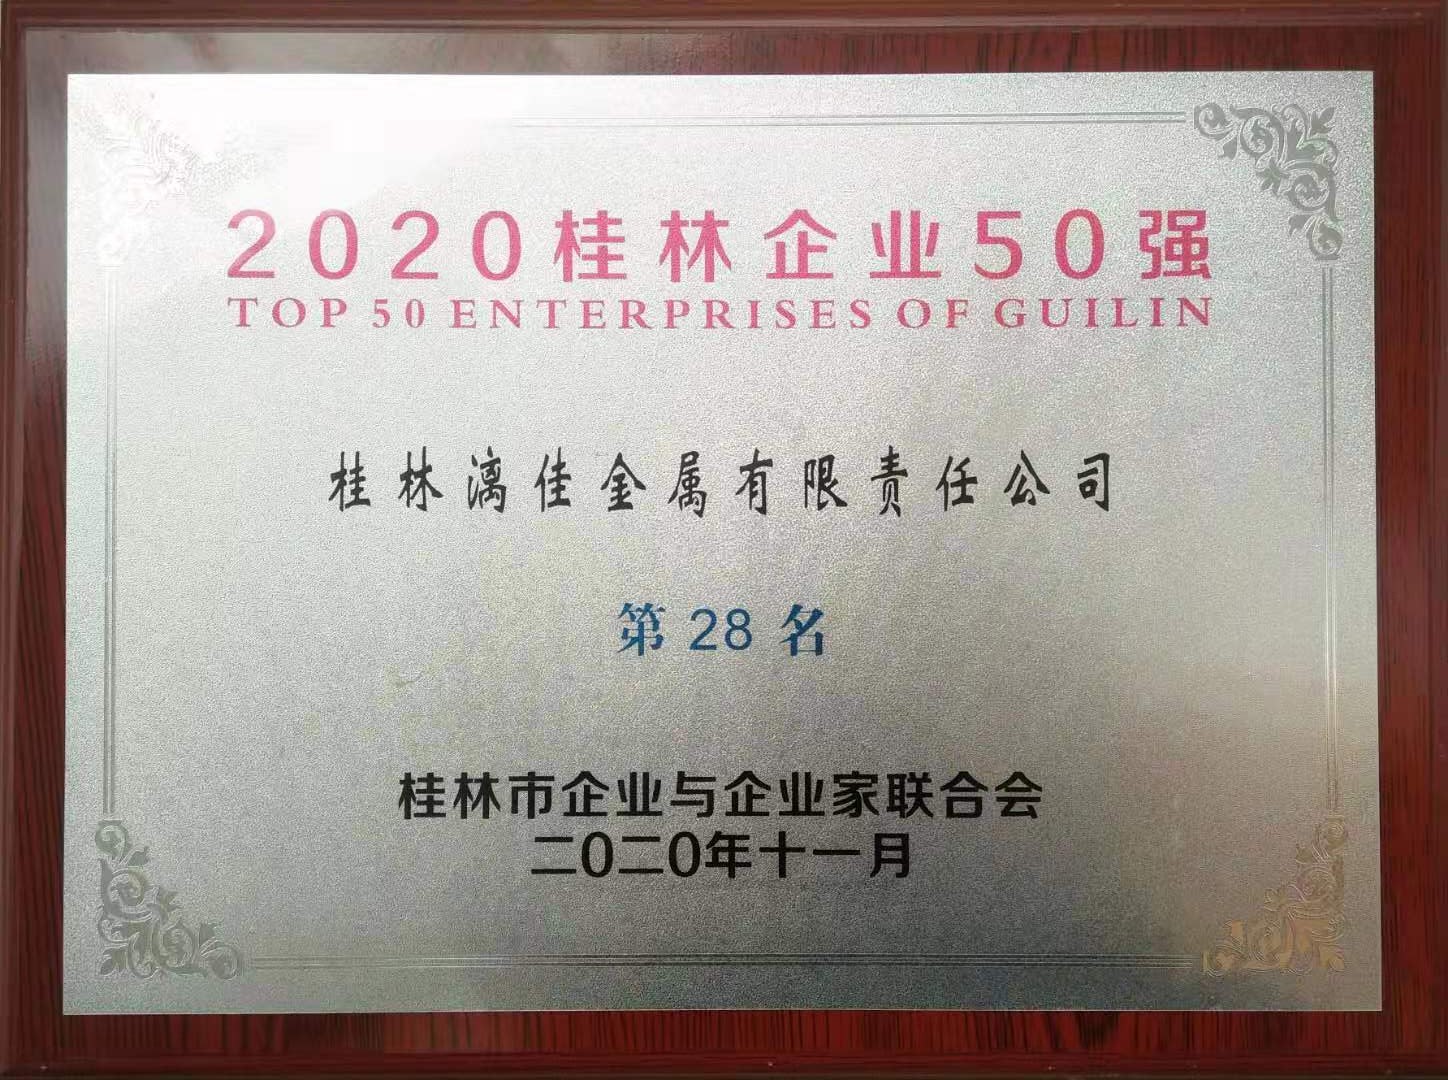 公司荣获“2020年桂林企业50强” 第28名